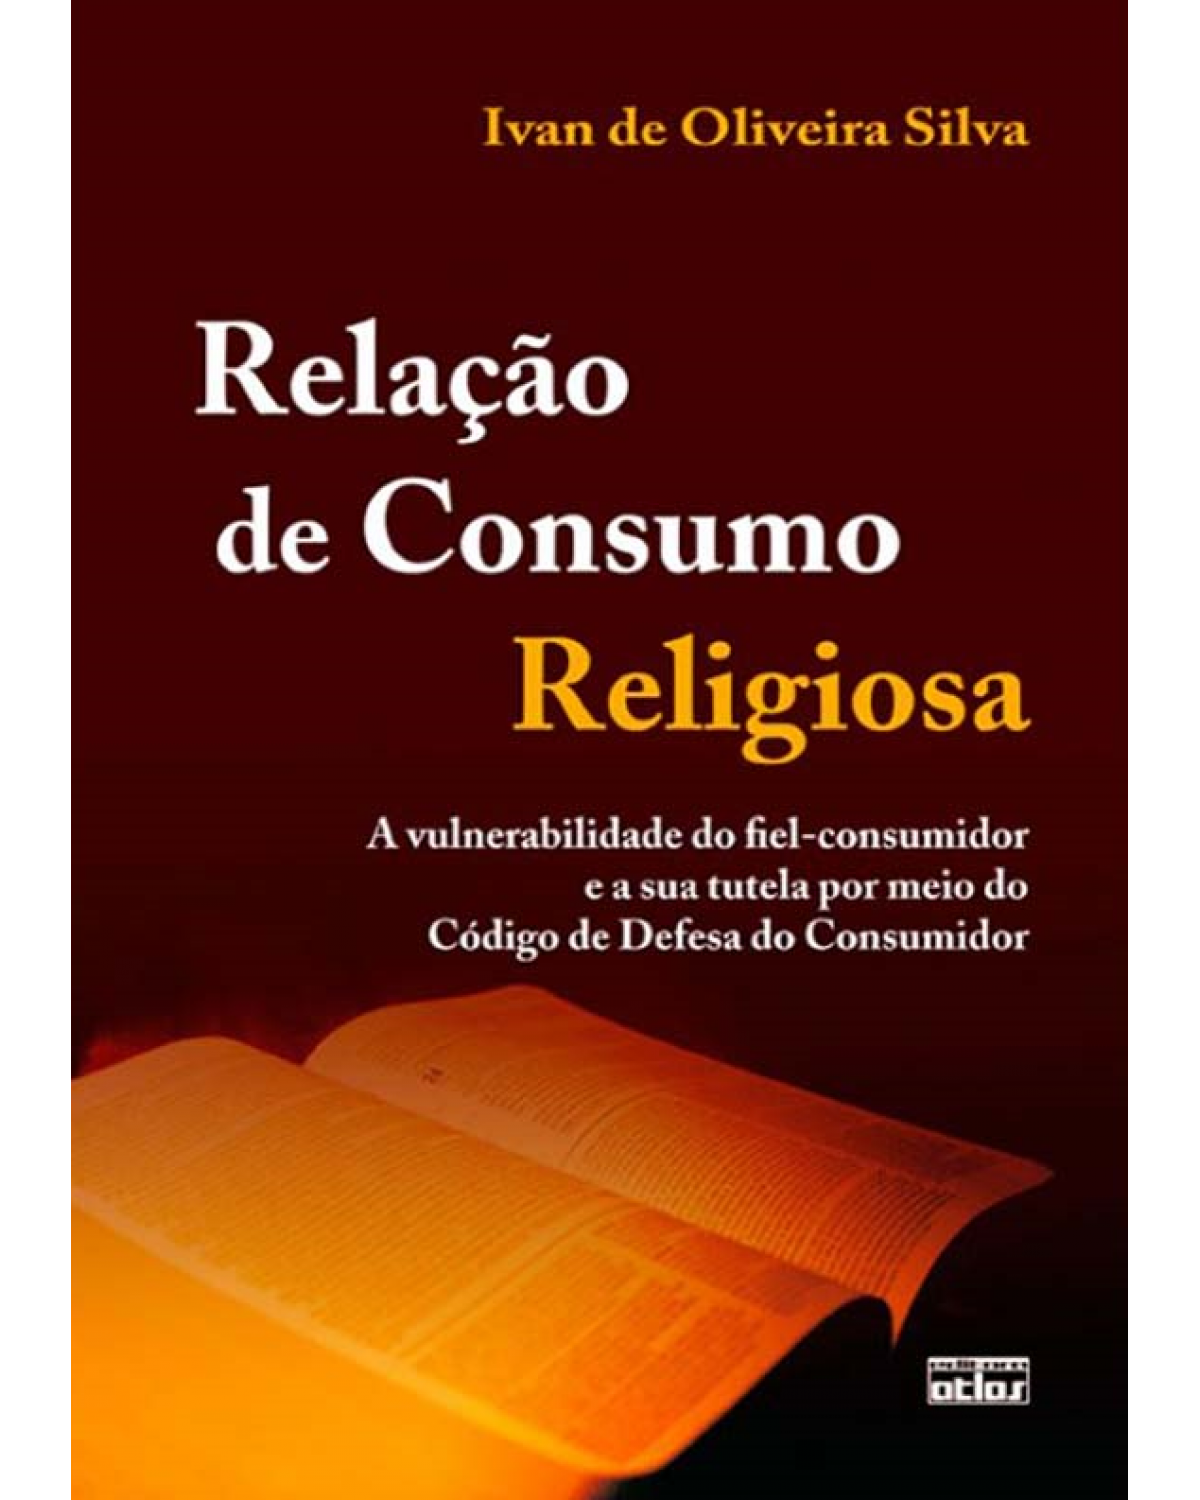 Relação de consumo religiosa - A vulnerabilidade do fiel-consumidor e a sua tutela por meio do Código de Defesa do Consumidor - 1ª Edição | 2012